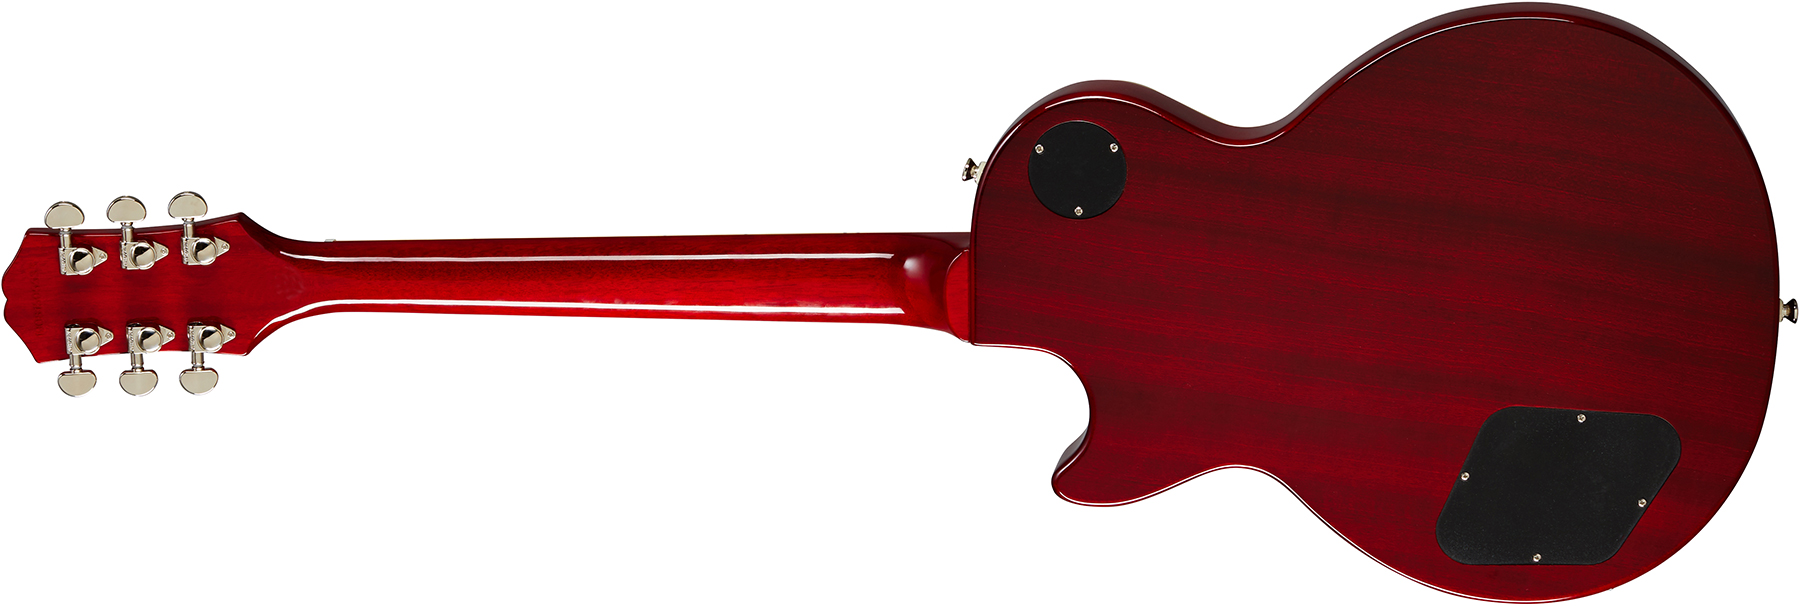 Epiphone Les Paul Standard 60s 2h Ht Rw - Bourbon Burst - Single cut electric guitar - Variation 1